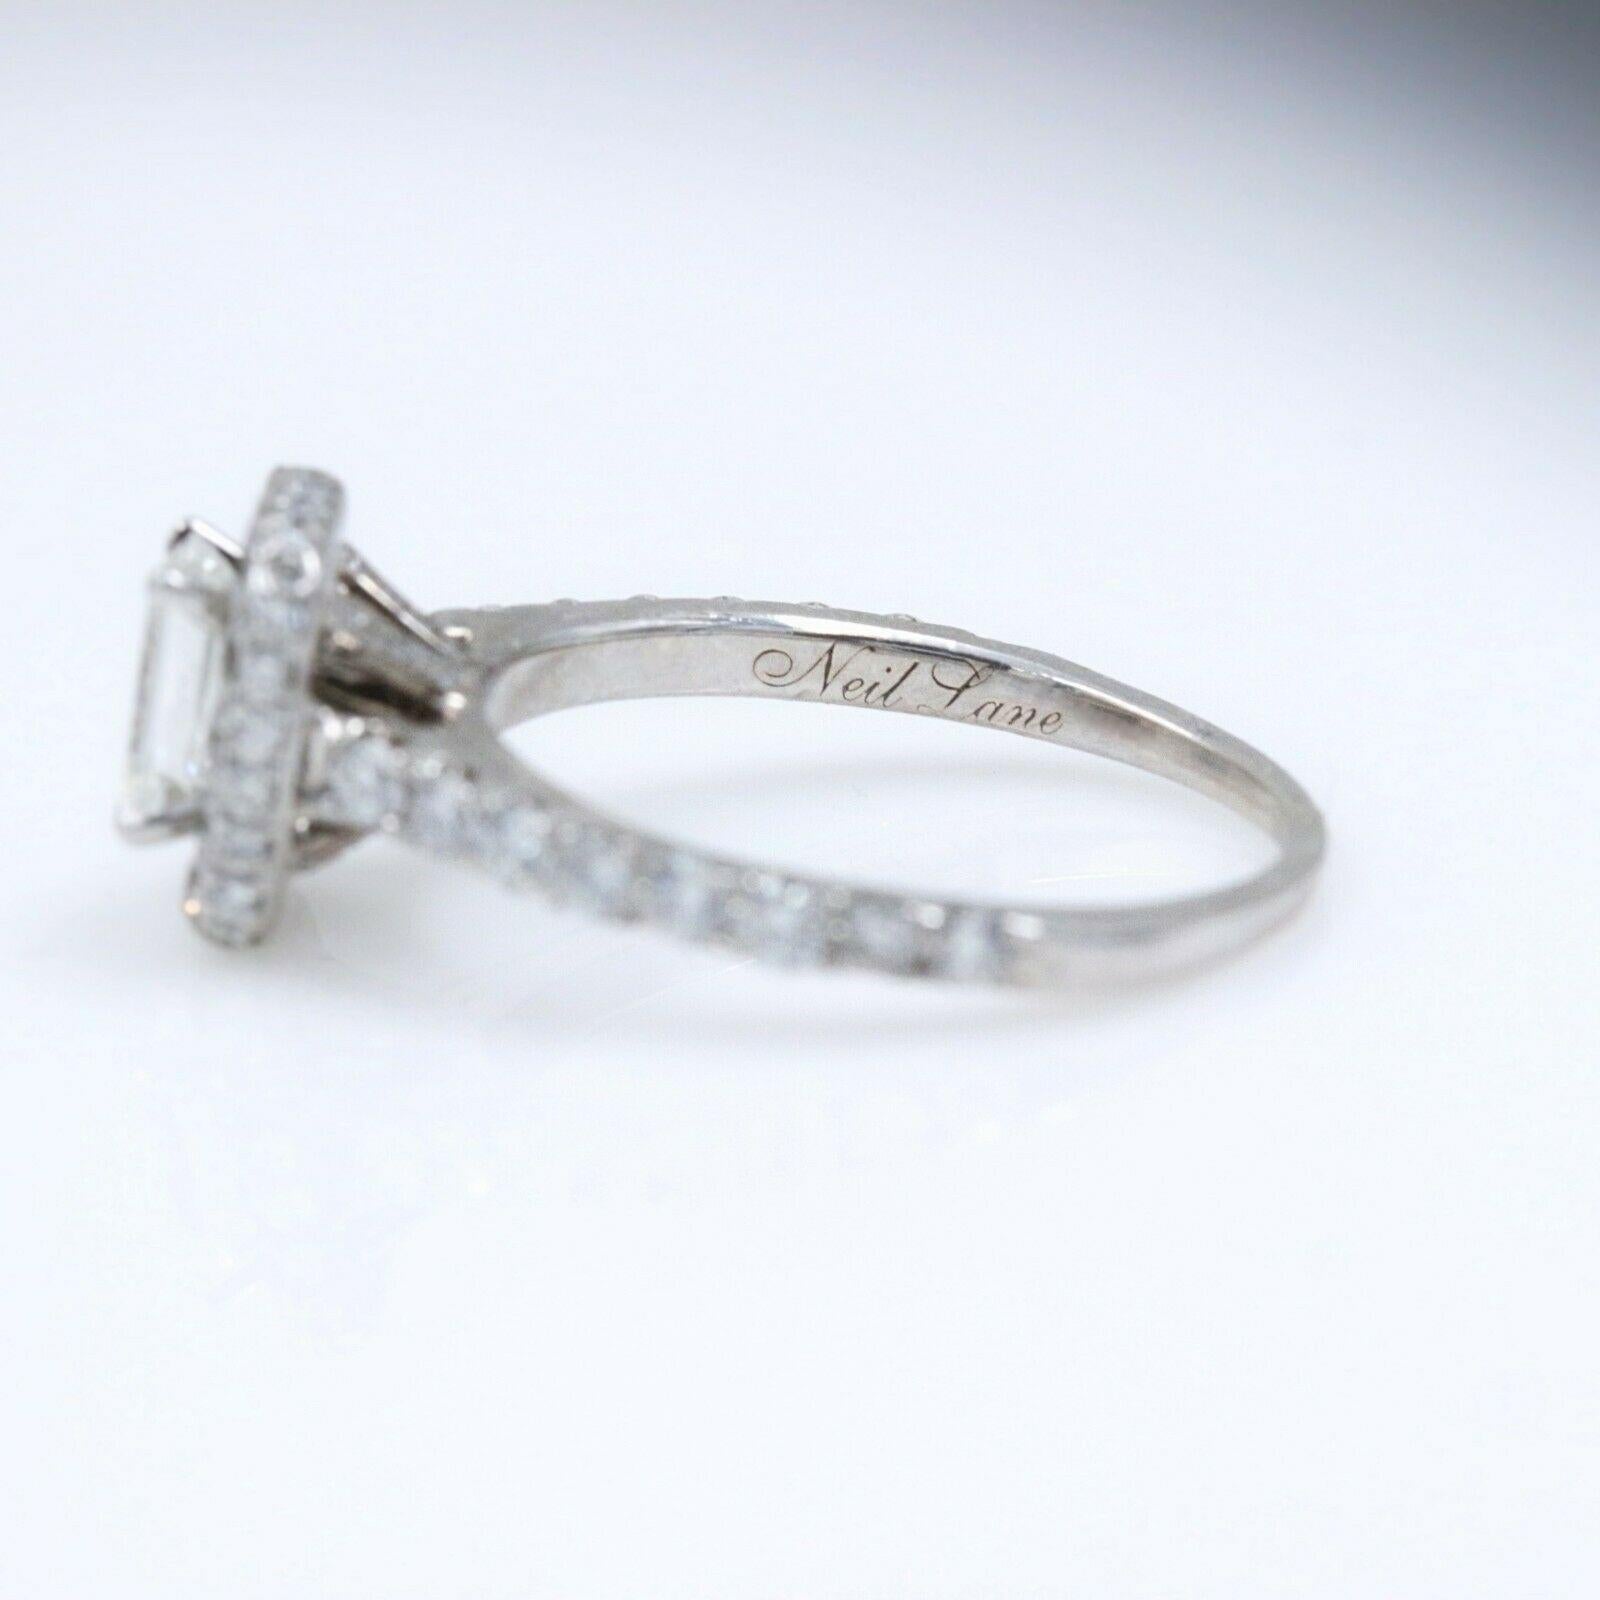 Neil Lane Diamond Engagement Ring Emerald Cut 1 1/2 Carat SI1 14 Karat Gold 2